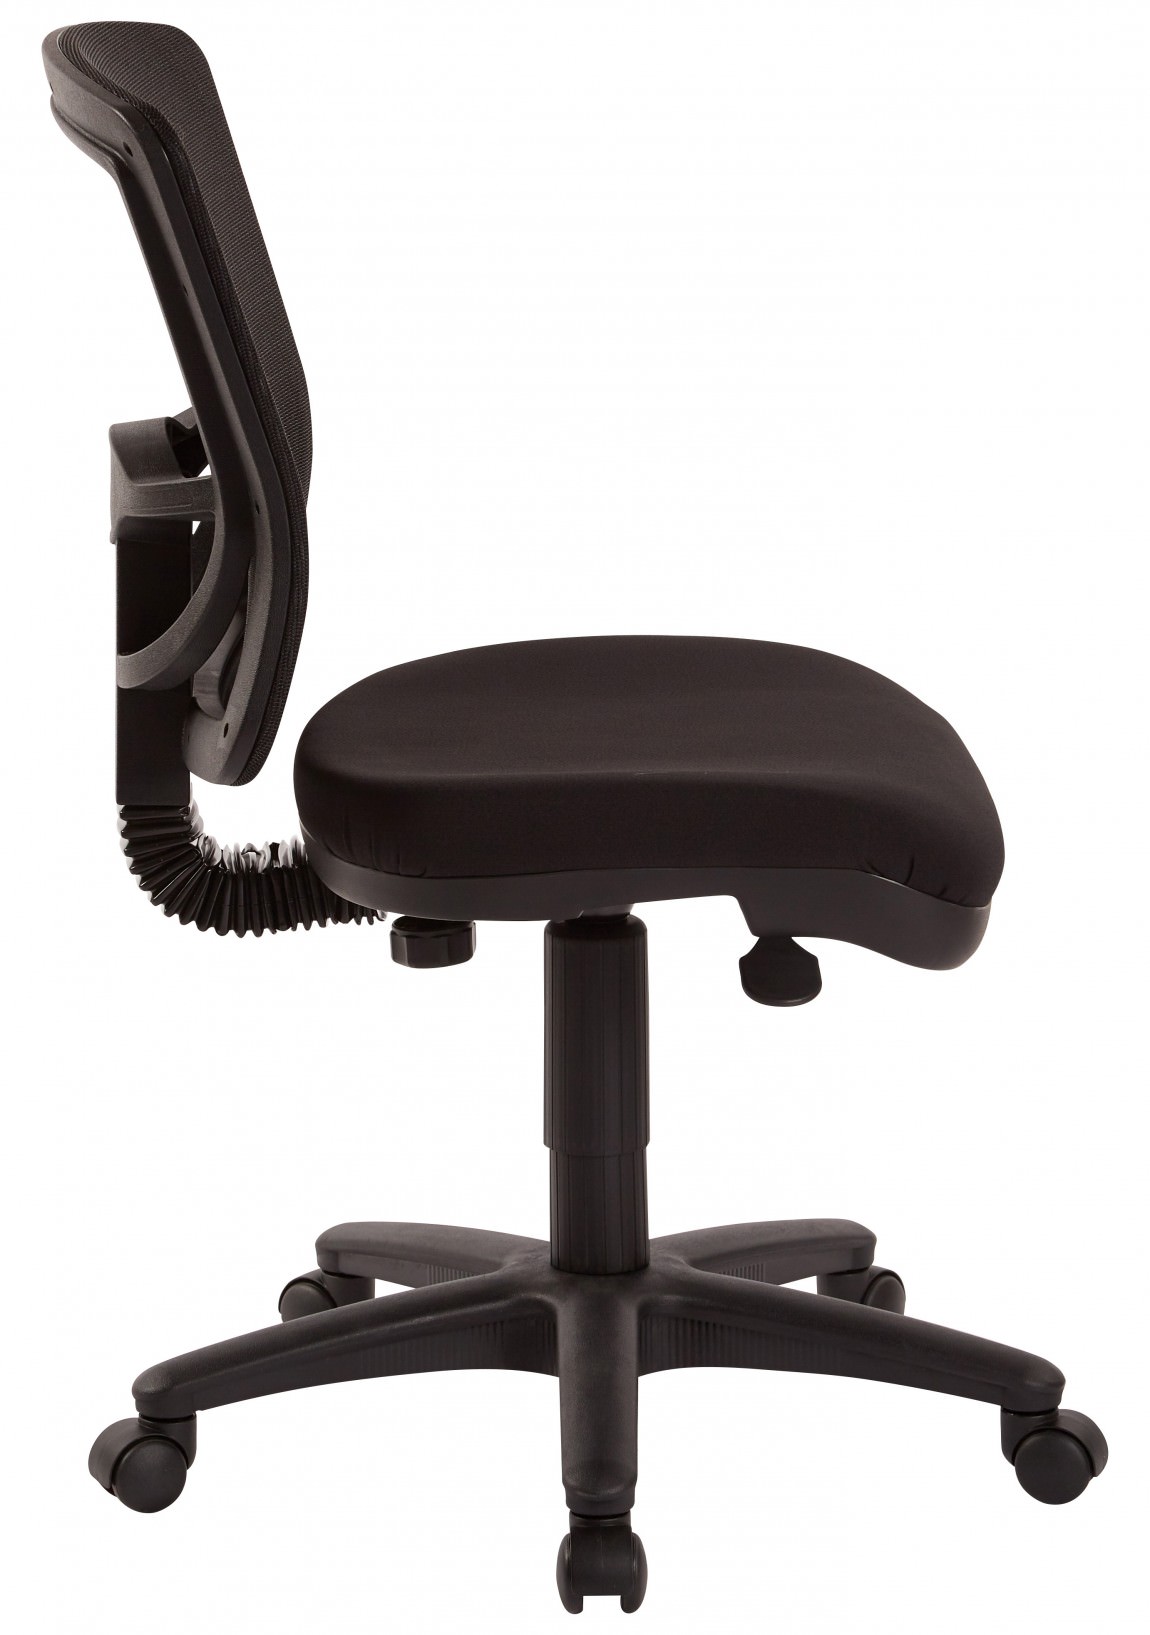 25711 Armless Office Chair 3 